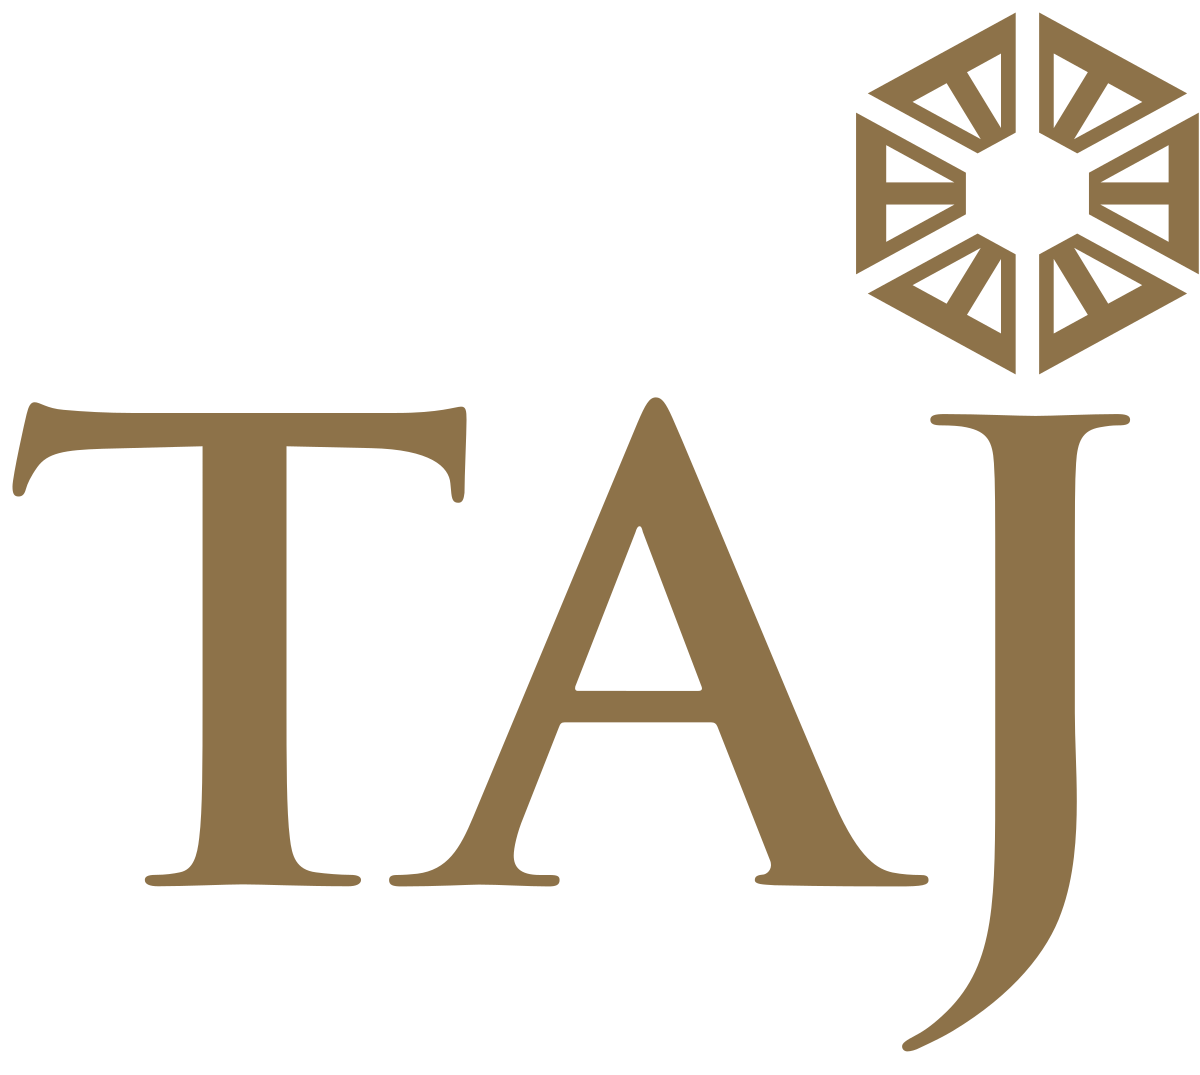 Chain of Hotels Tata Logo - Taj Hotels